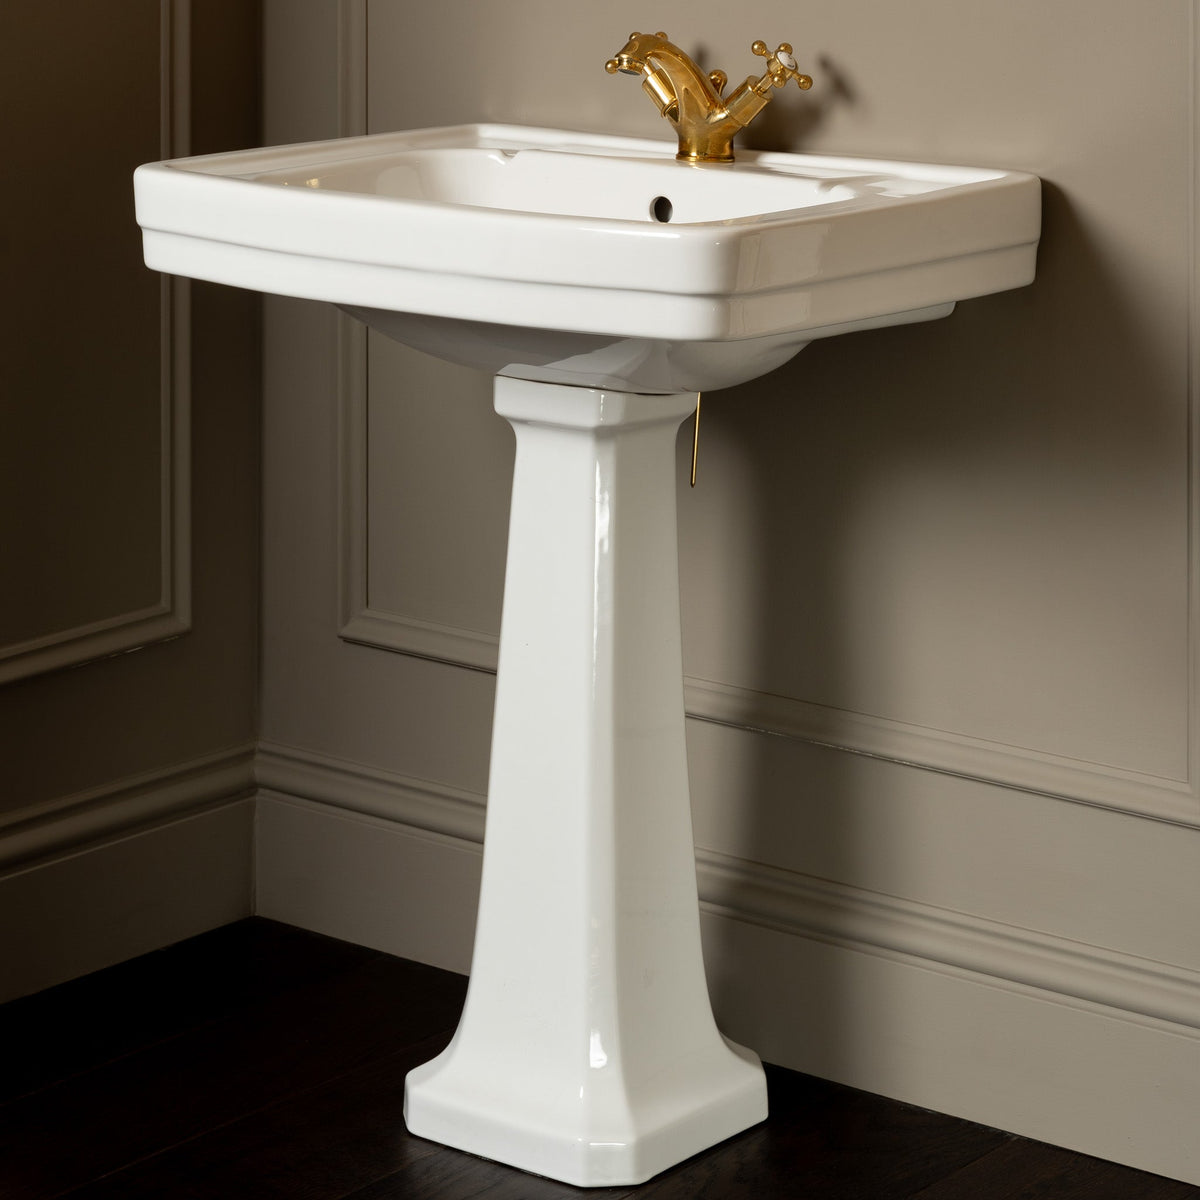 Cavalry White Pedestal Bathroom Sink - Rutland London (USA)